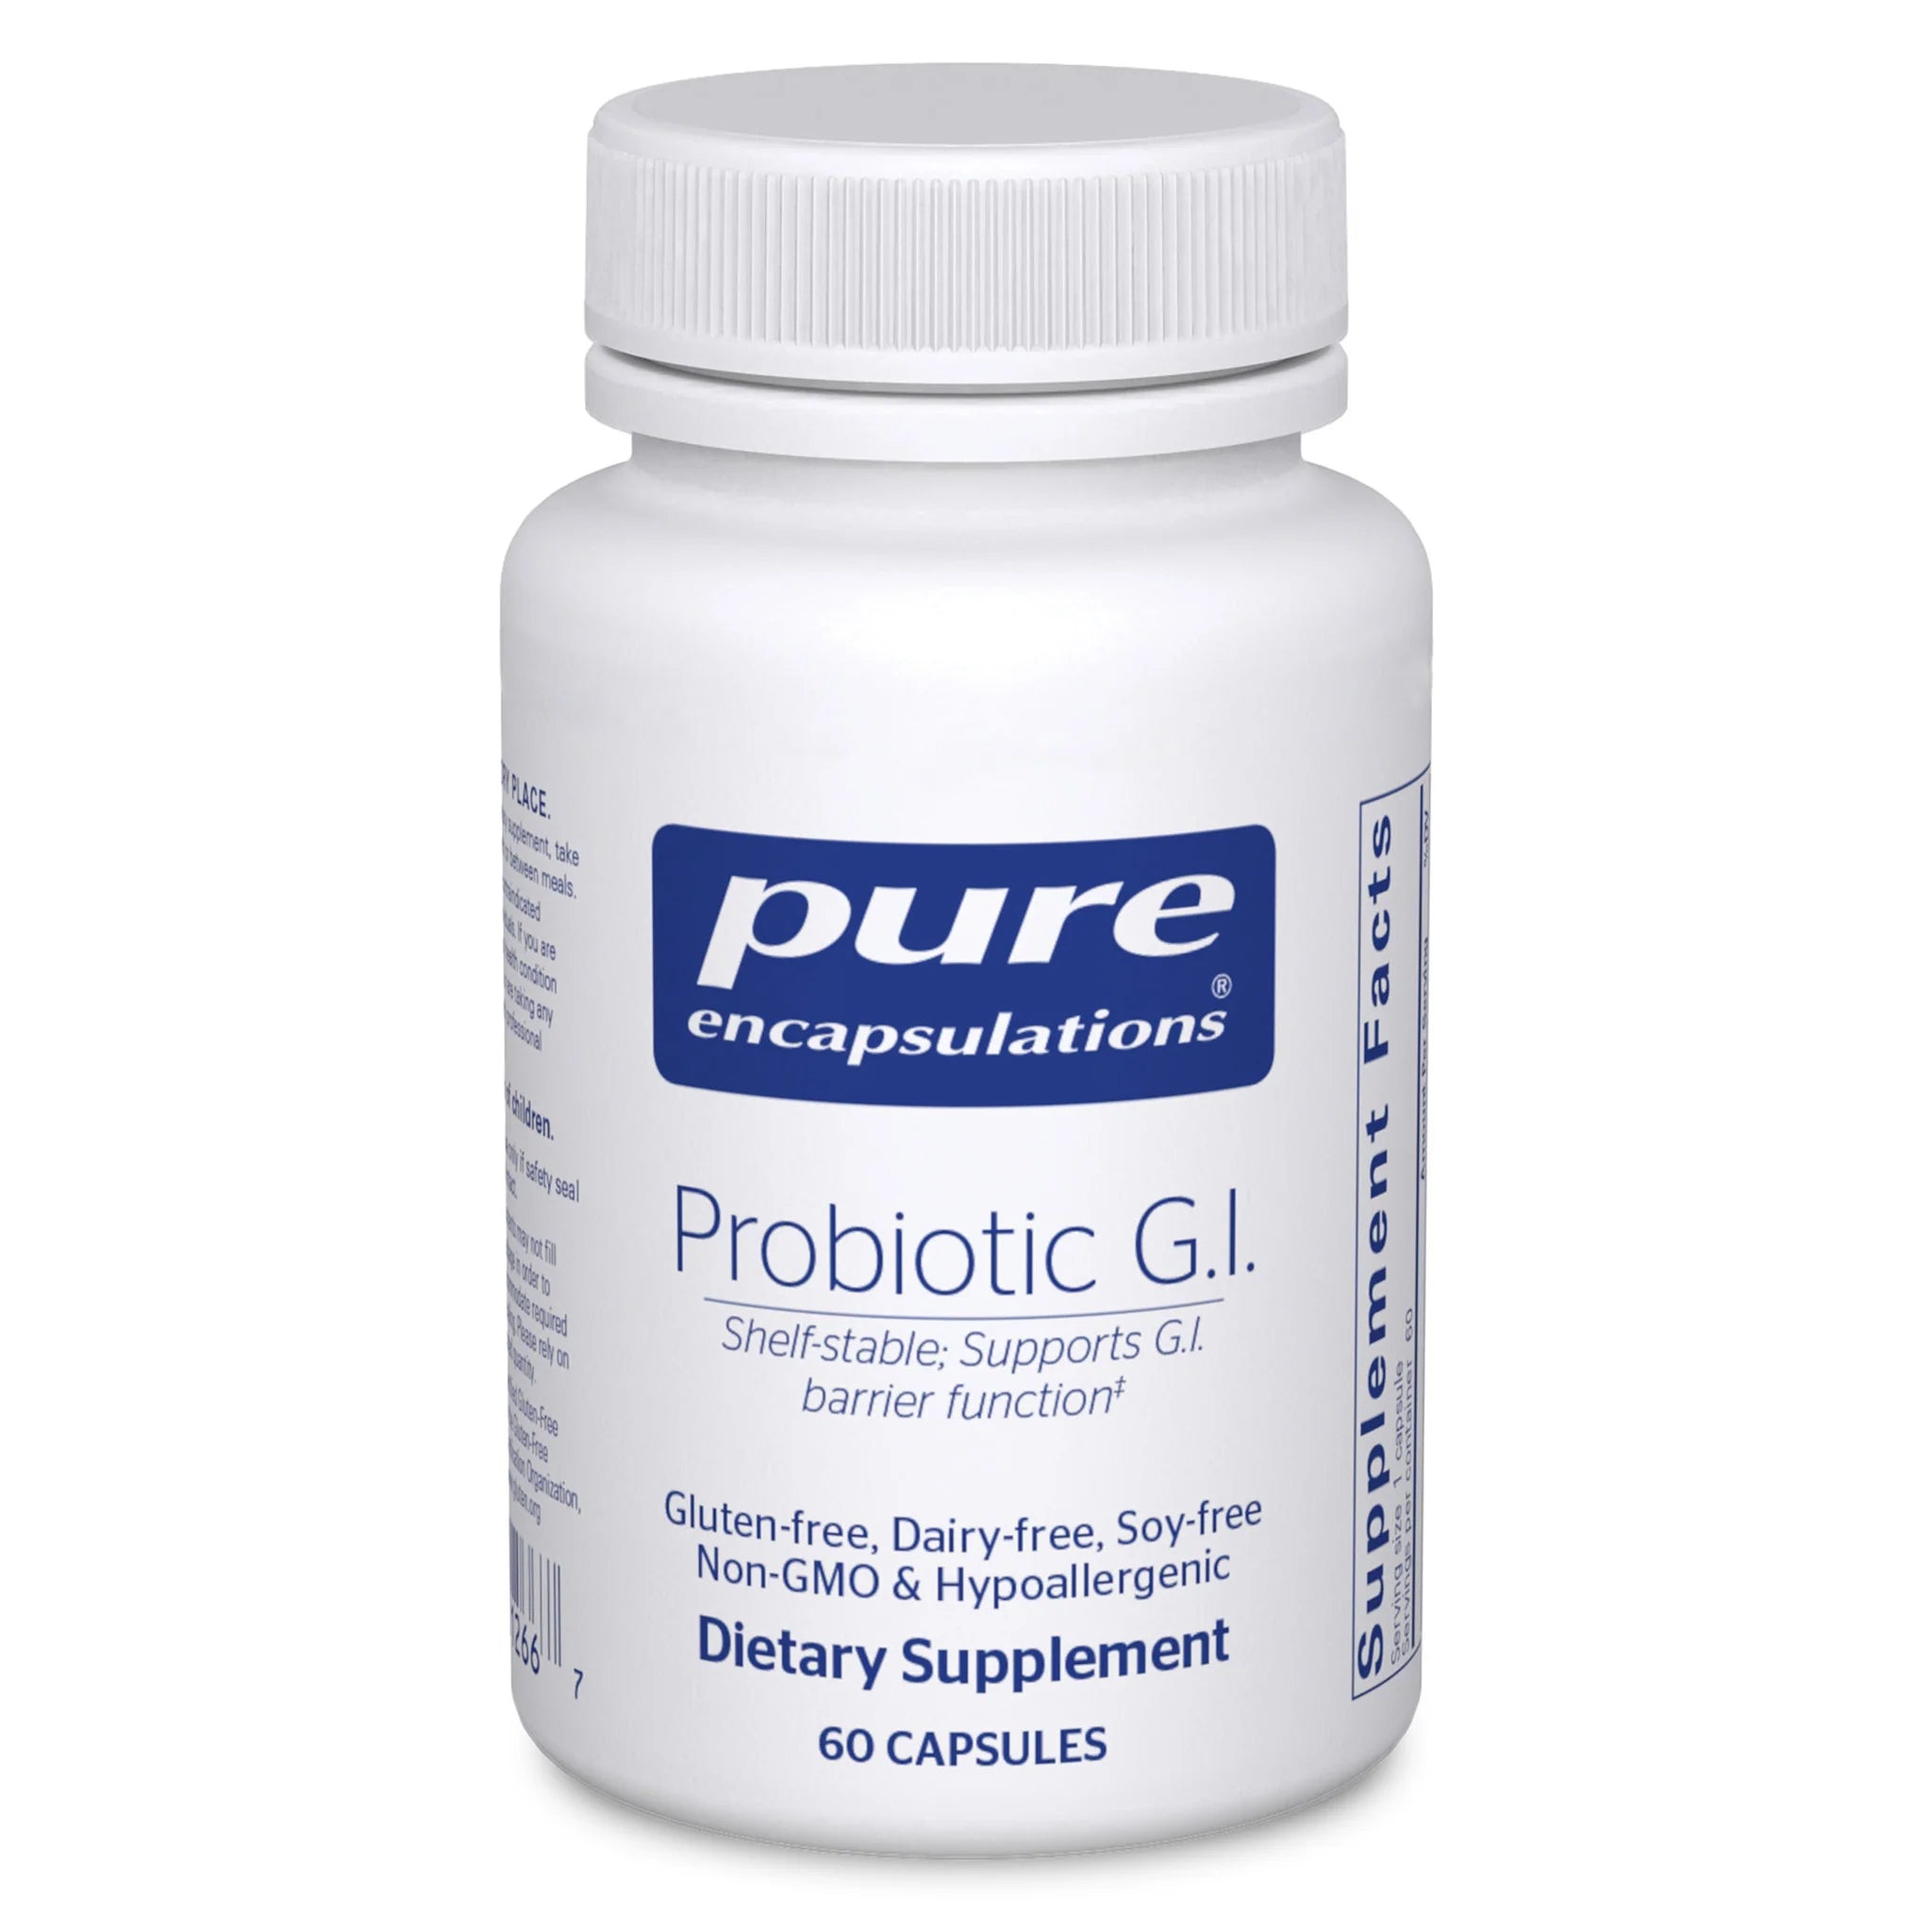 Probiotic G.I.